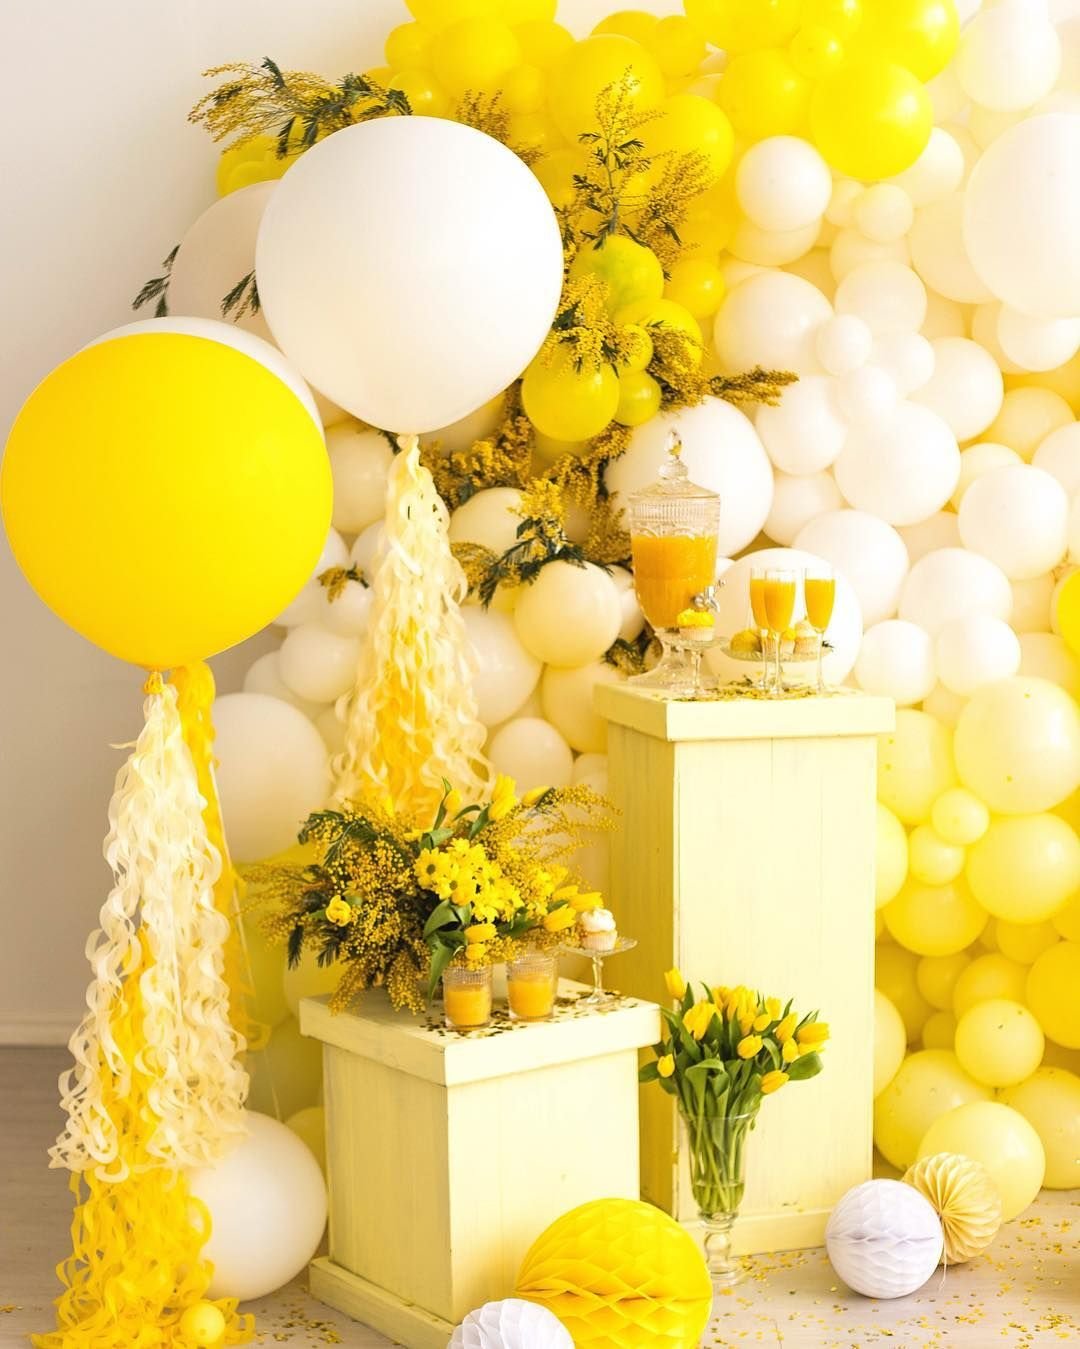 Шары сочетание цветов. Желтые воздушные шары. Бело желтые воздушные шары. Фотозона в желтом цвете. Декор для праздника в желтом цвете.